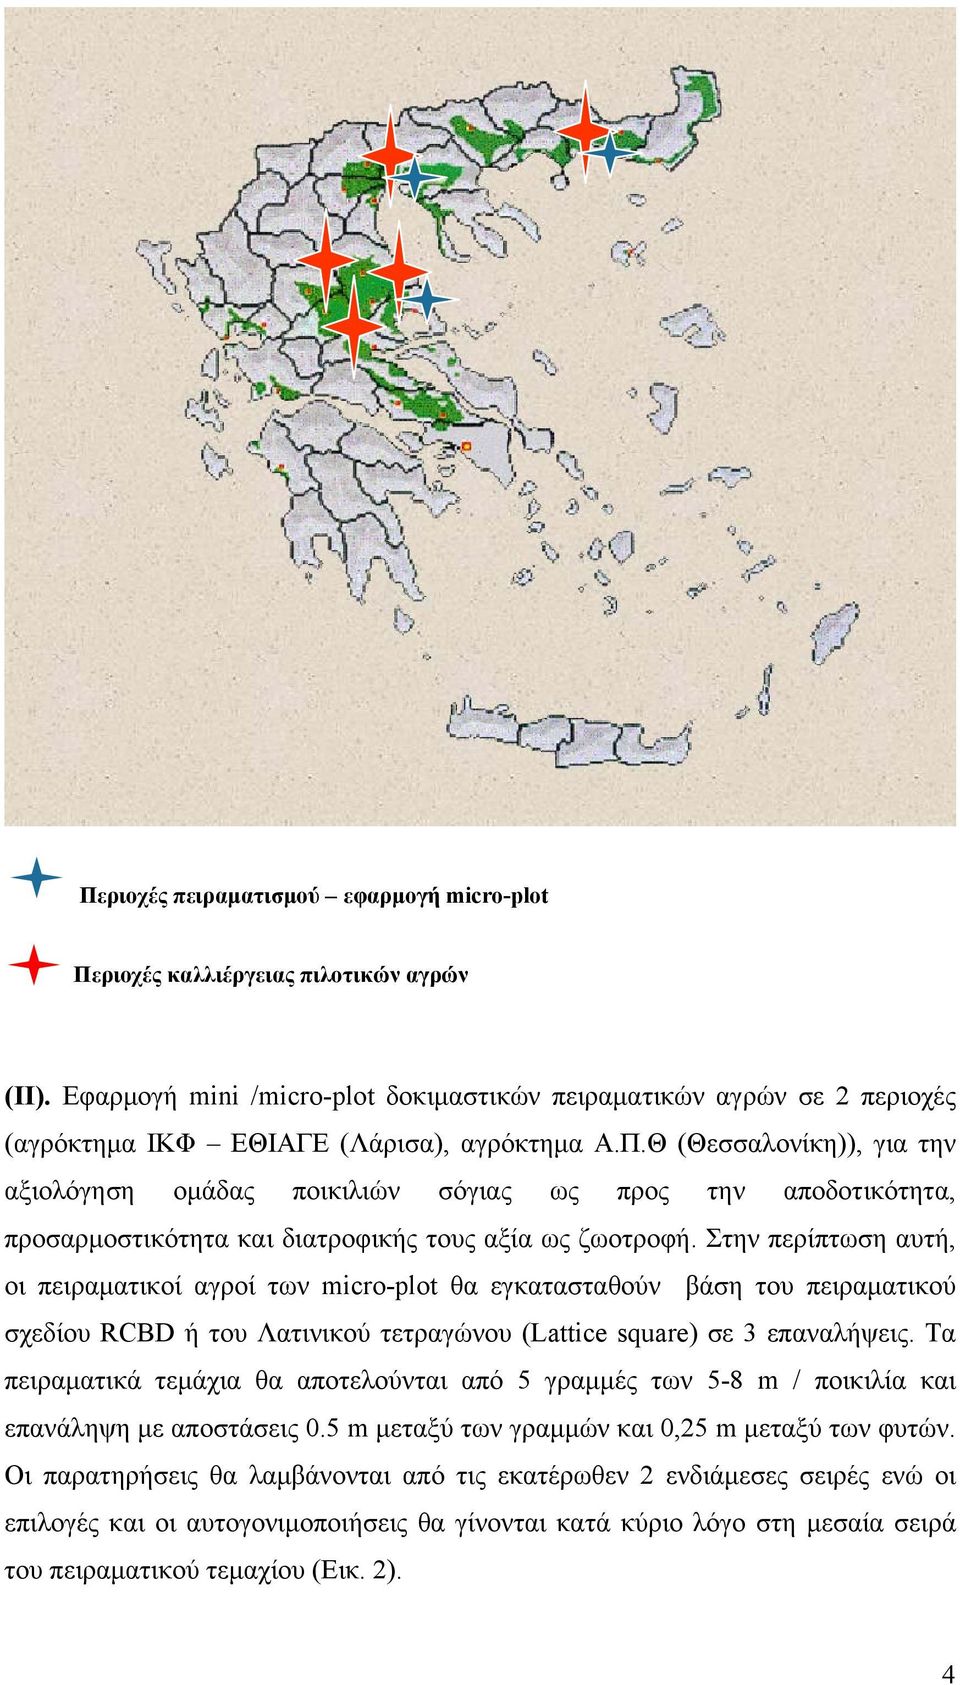 Θ (Θεσσαλονίκη)), για την αξιολόγηση ομάδας ποικιλιών σόγιας ως προς την αποδοτικότητα, προσαρμοστικότητα και διατροφικής τους αξία ως ζωοτροφή.